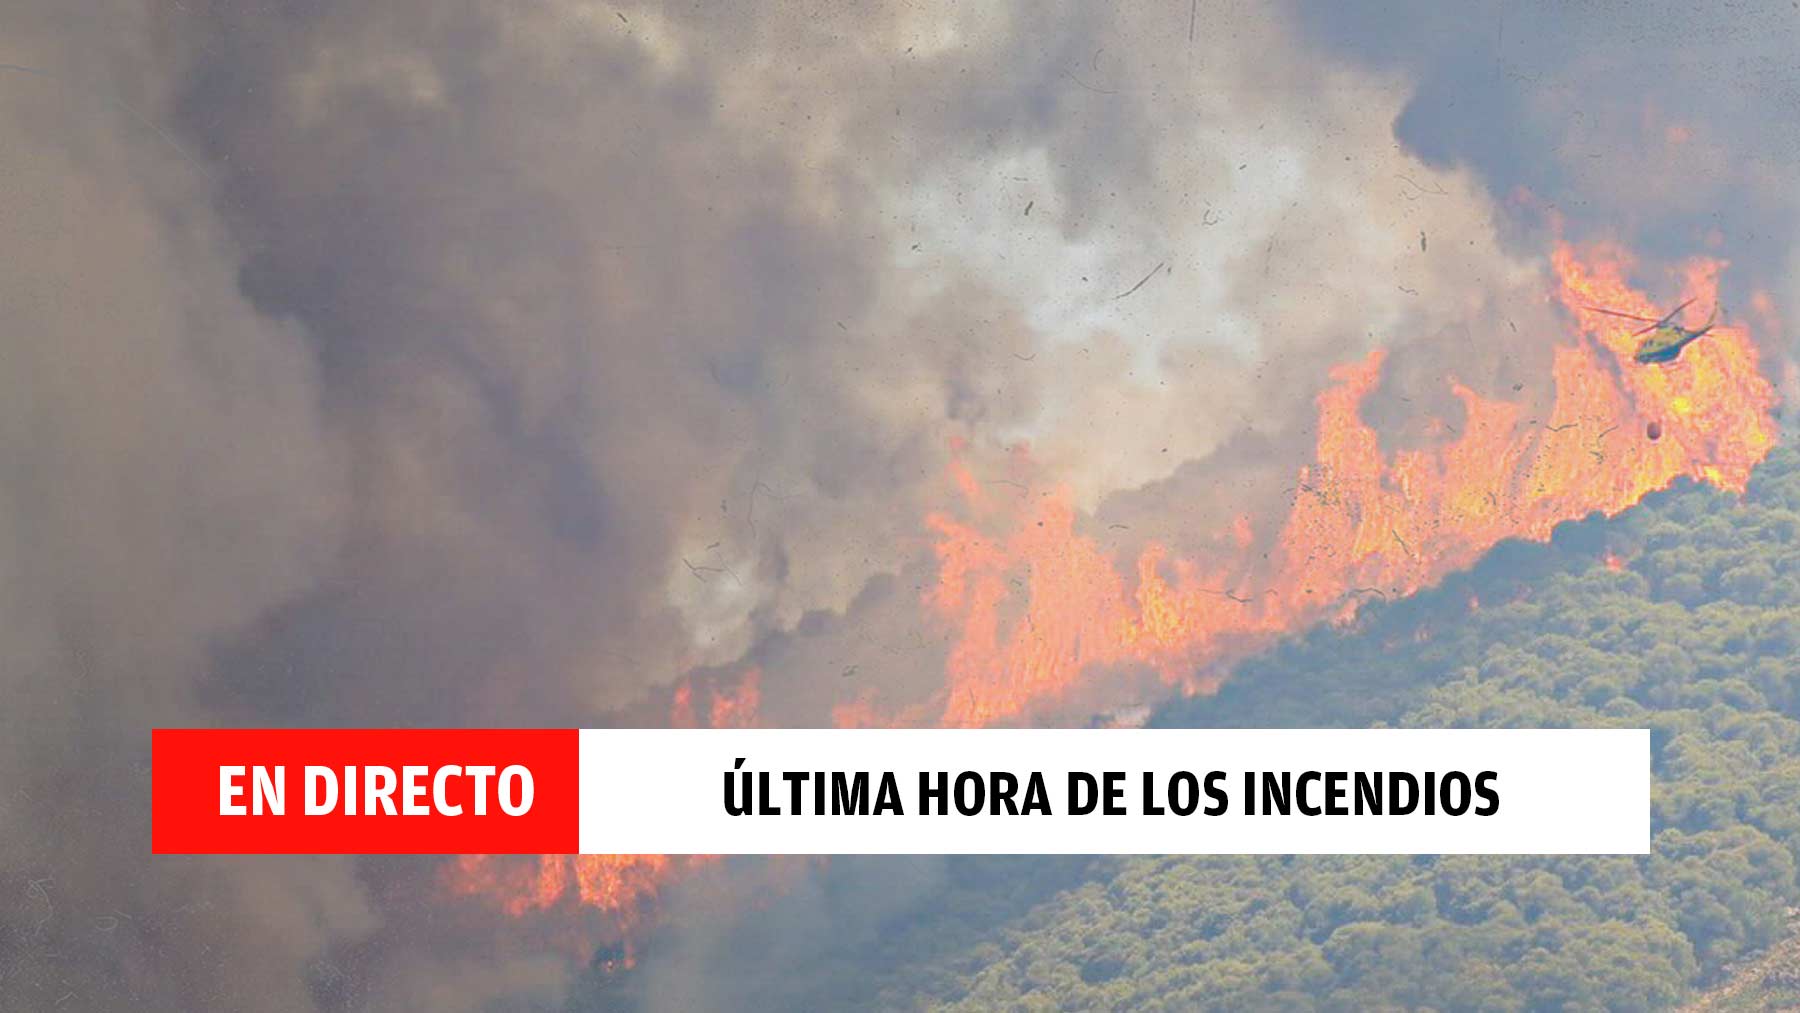 Incendios activos en España hoy, en directo: última hora de las carreteras cortadas y hectáreas quemadas